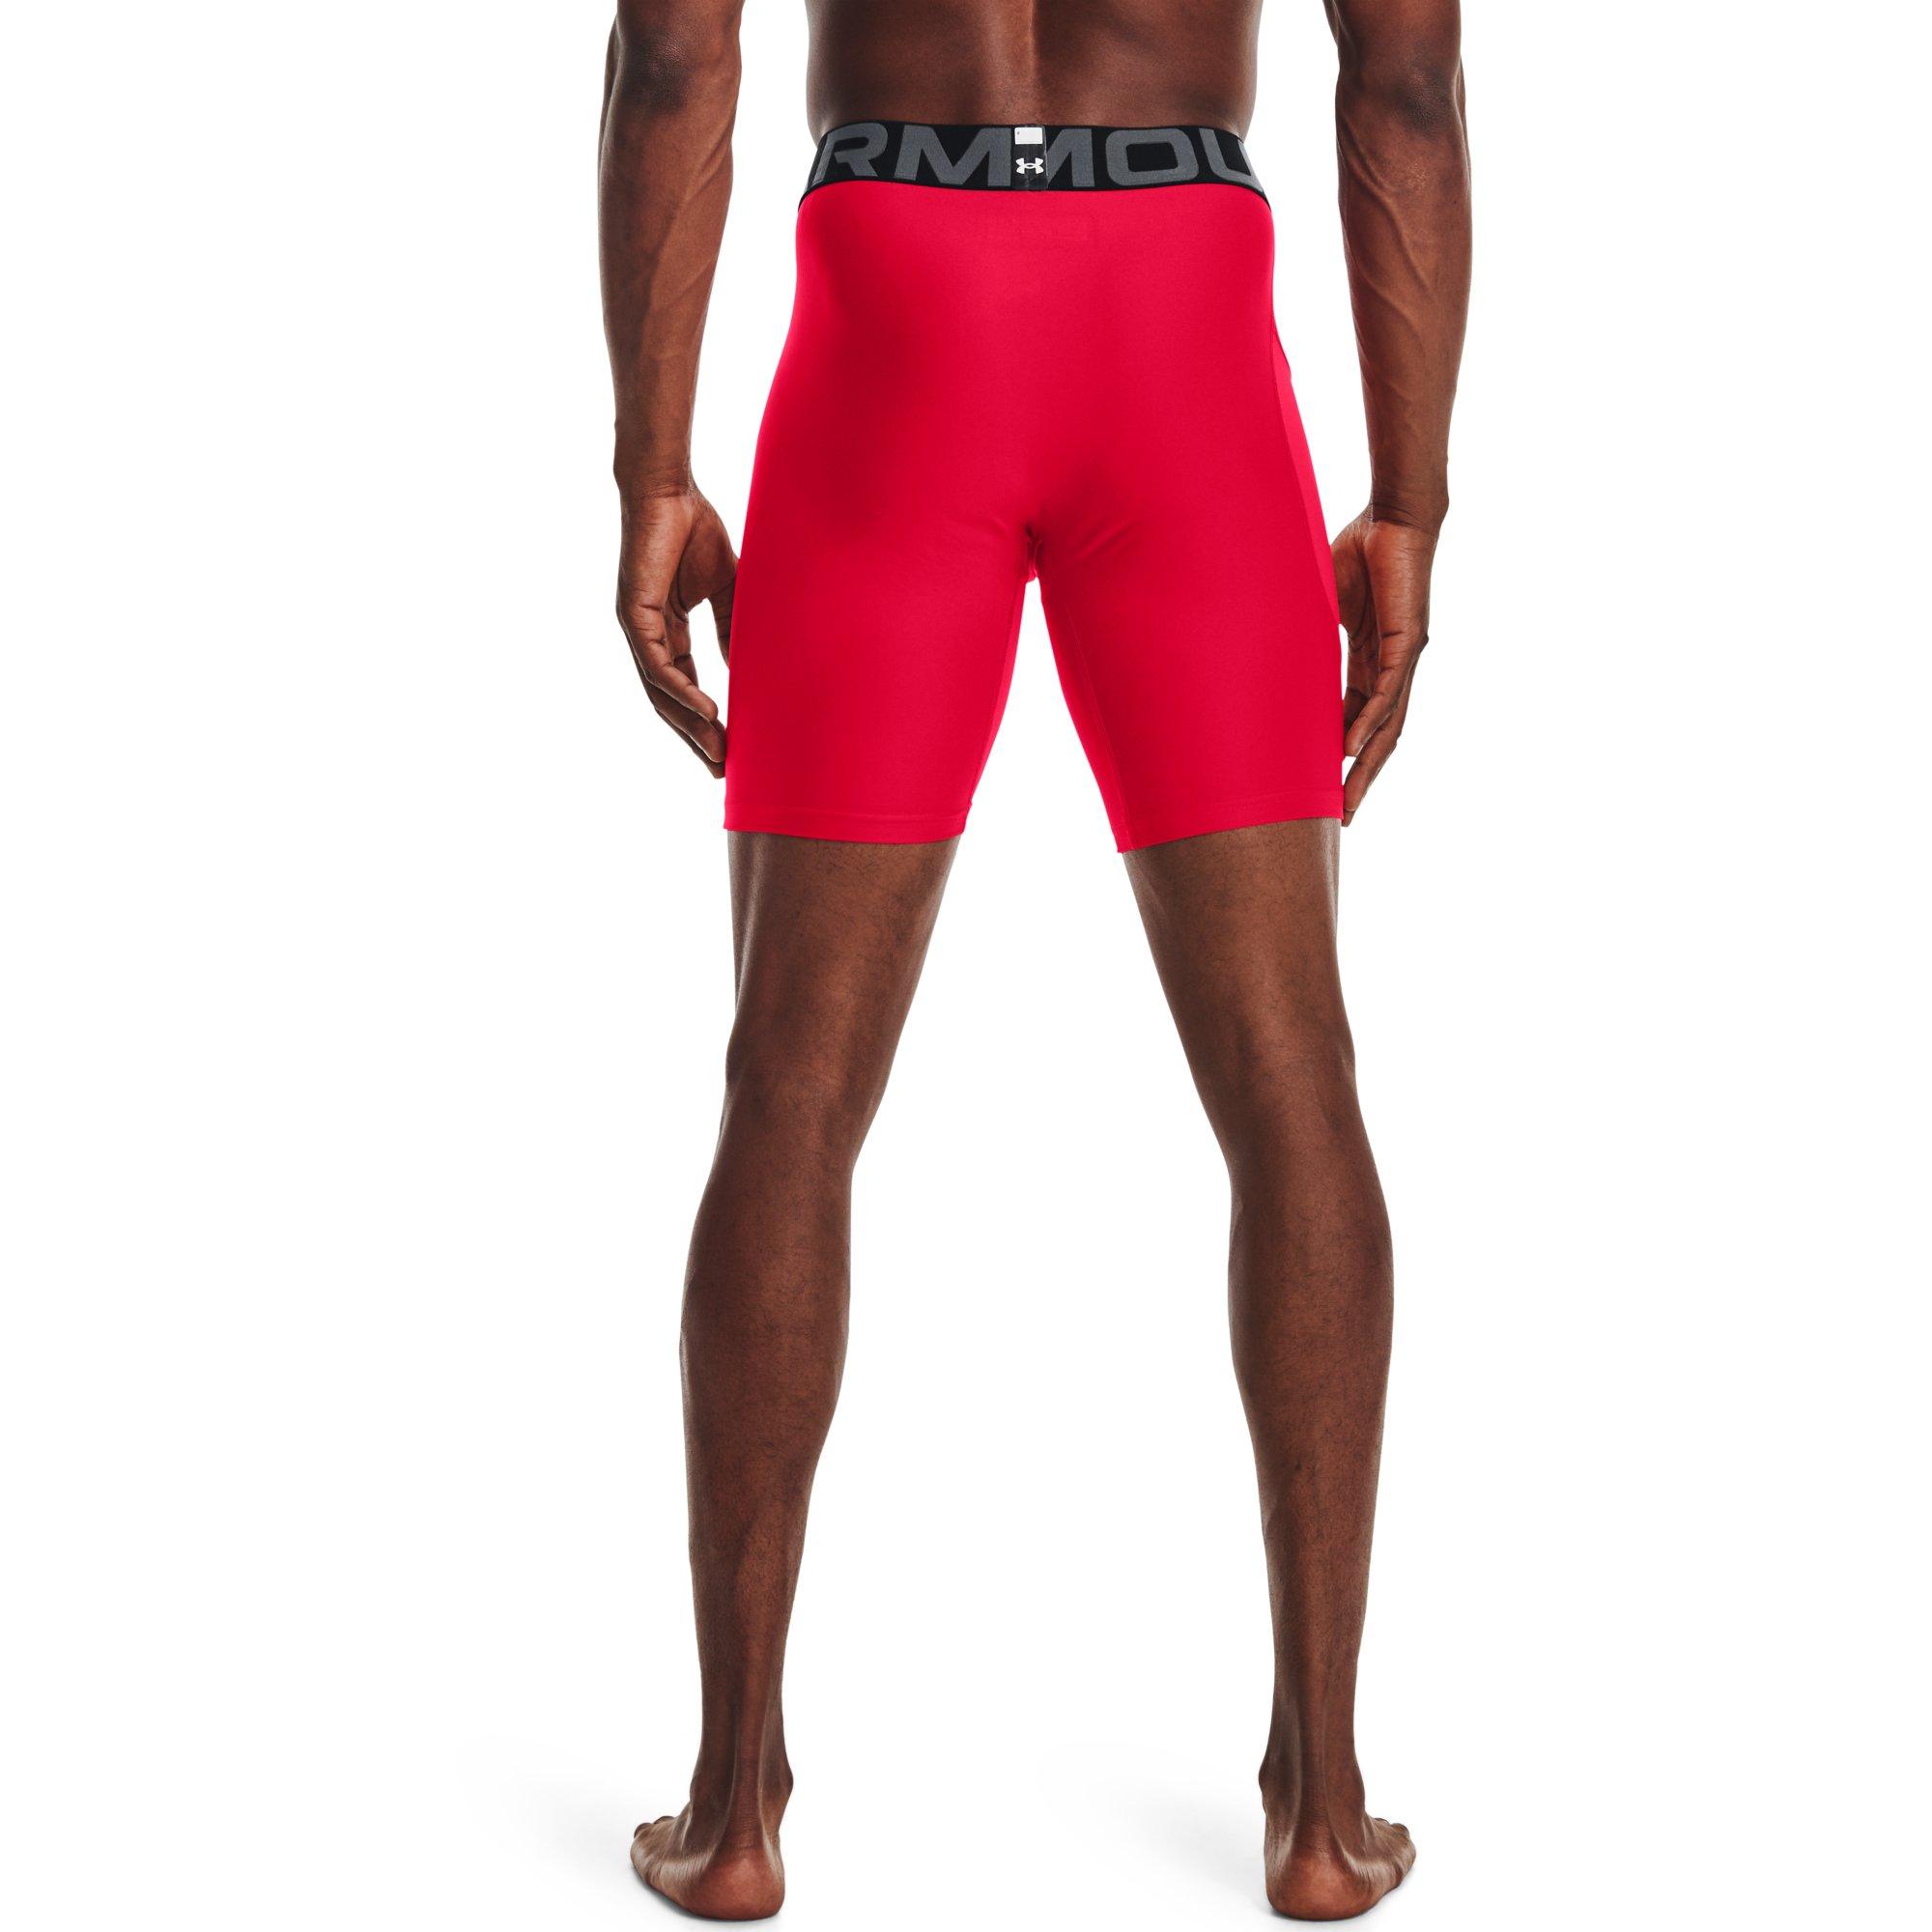 Under Armour mens white heatgear gym compression shorts underwear size L XL